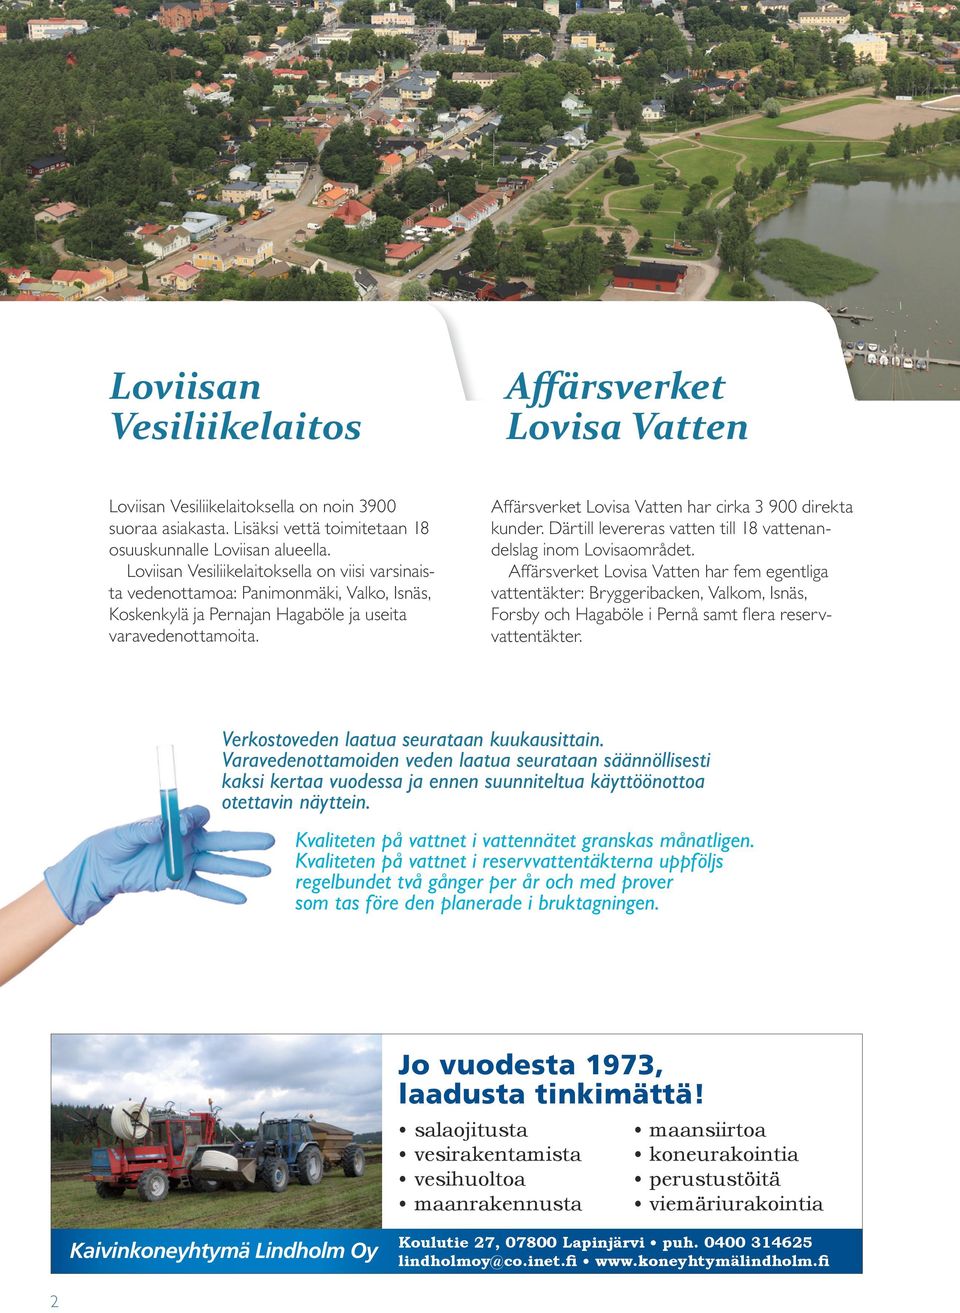 Affärsverket Lovisa Vatten har cirka 3 900 direkta kunder. Därtill levereras vatten till 18 vattenandelslag inom Lovisaområdet.